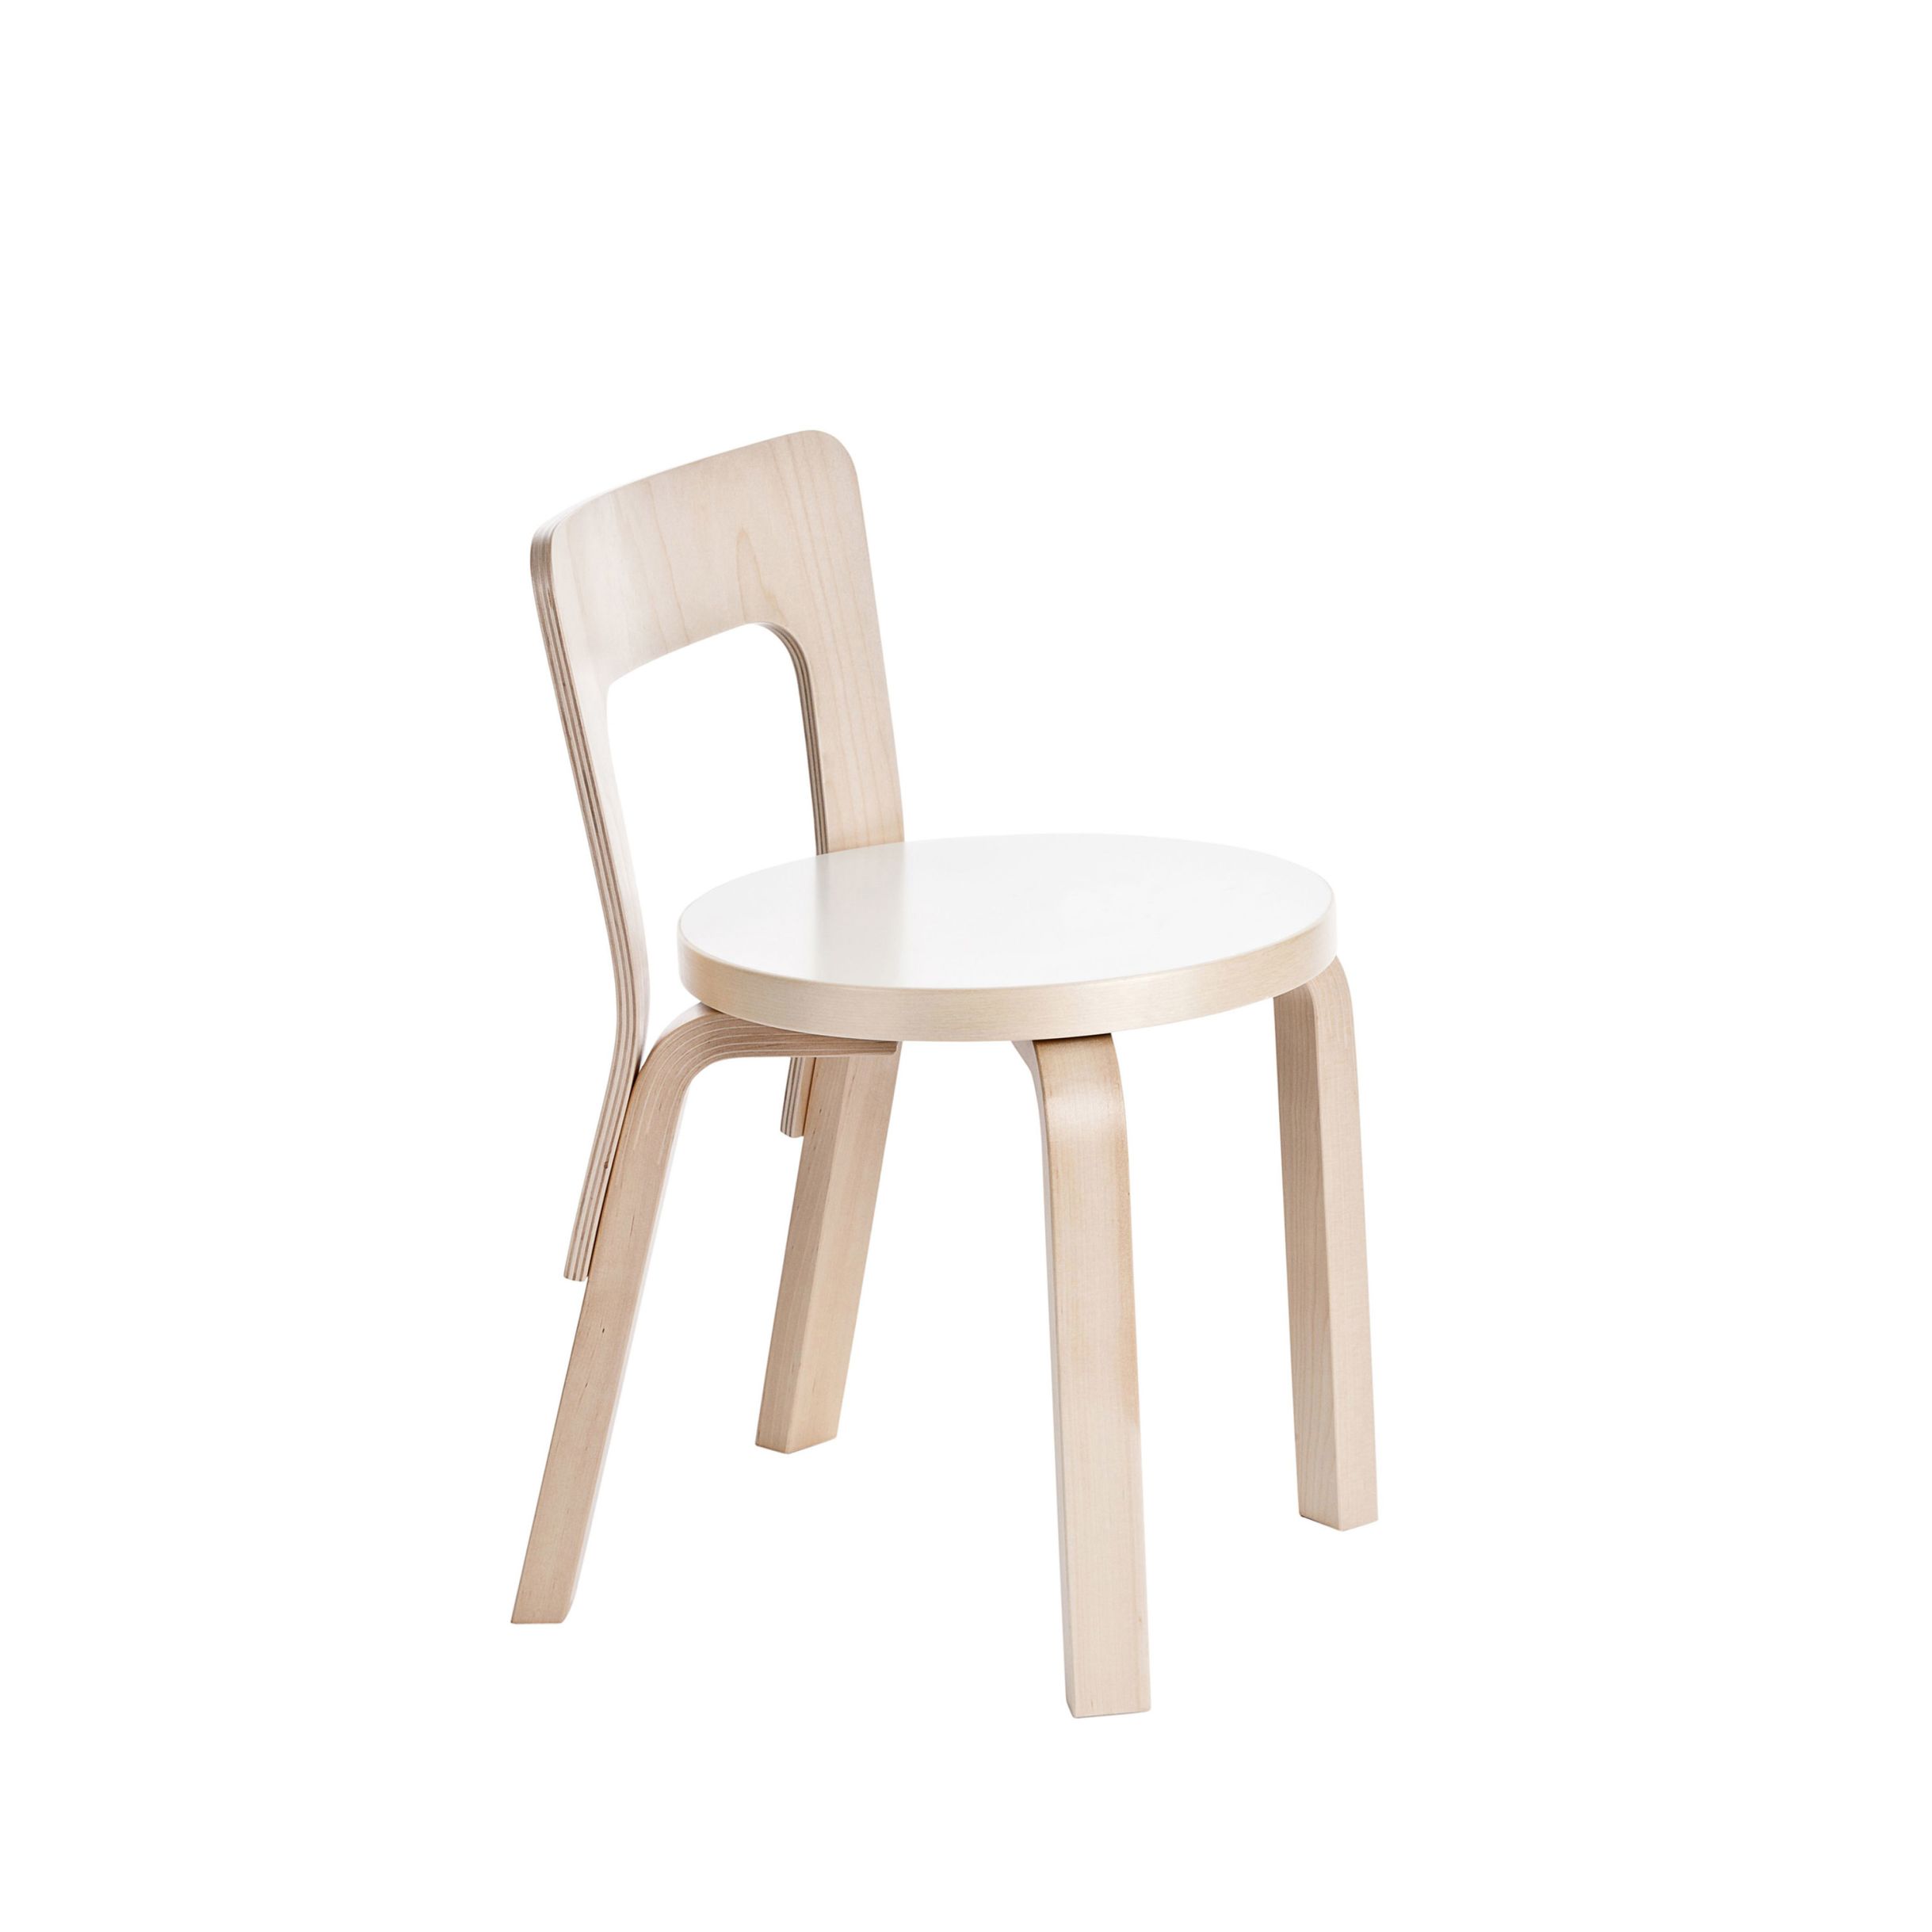 Childrens-Chair-N65-white-laminate_WEB-1977270